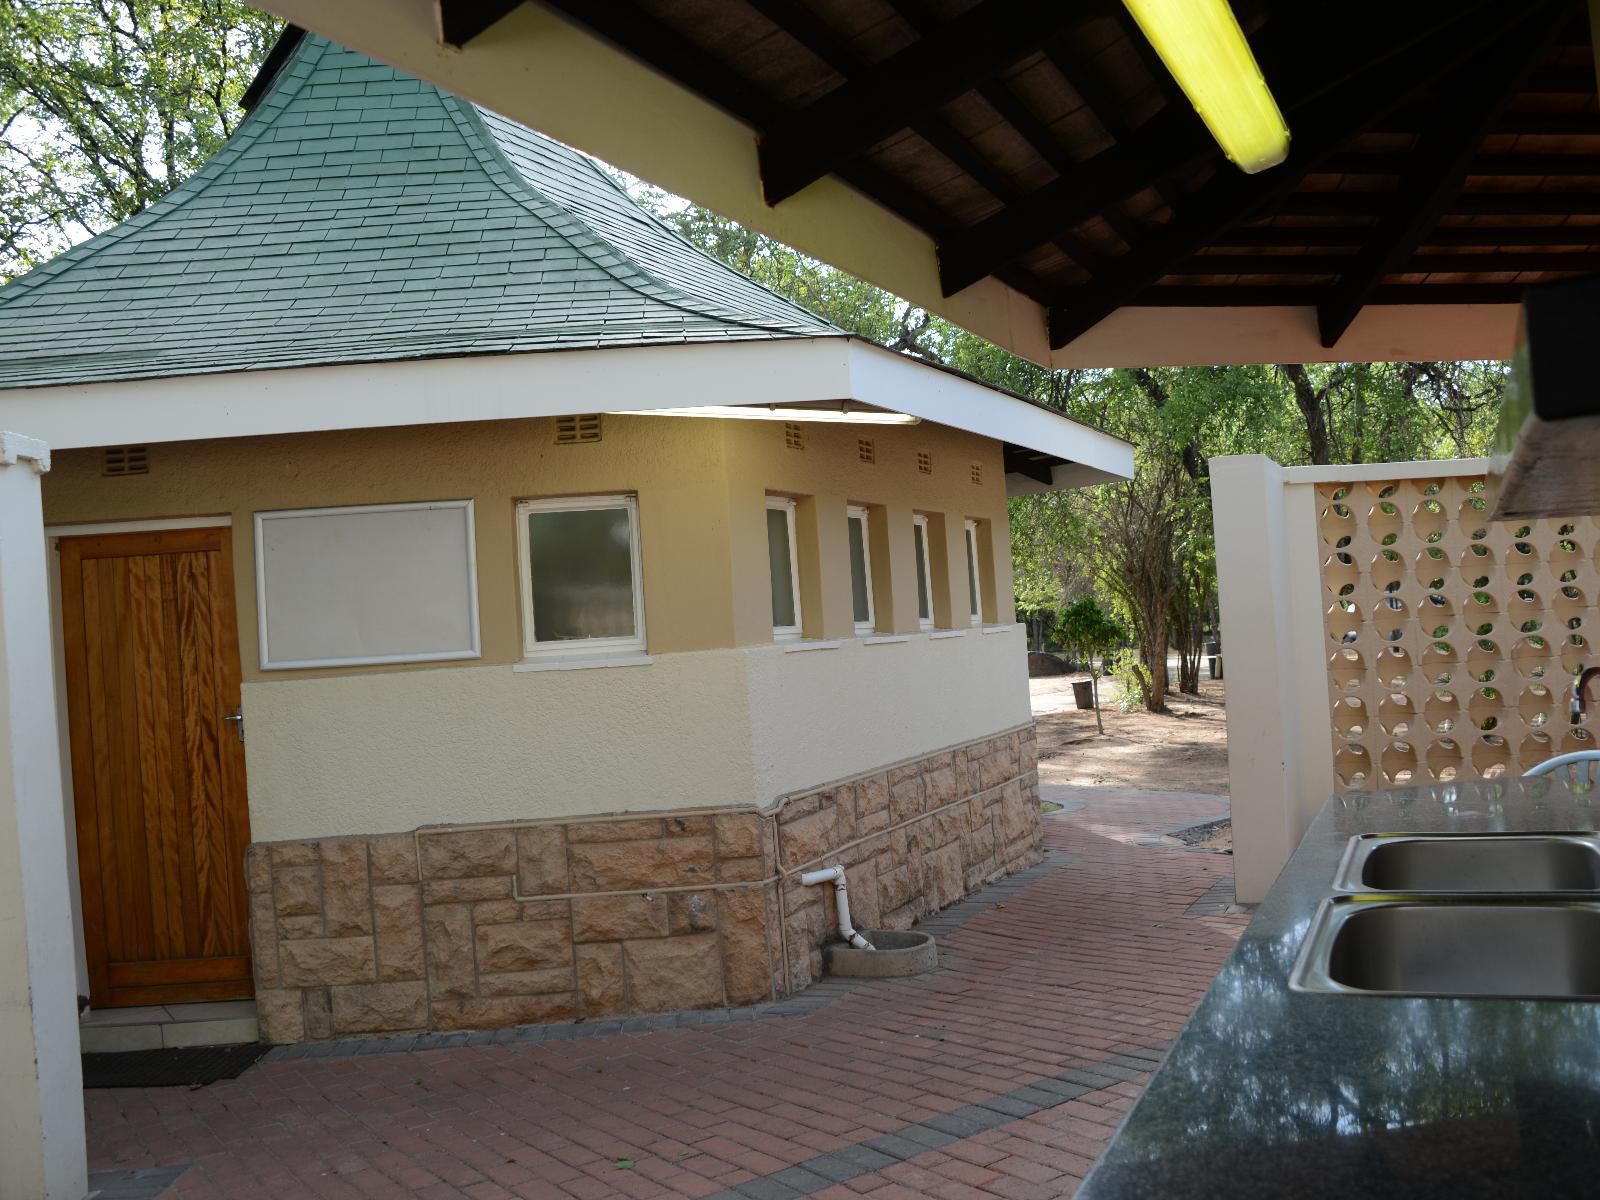 Atkv Eiland Spa Letsitele Limpopo Province South Africa House, Building, Architecture